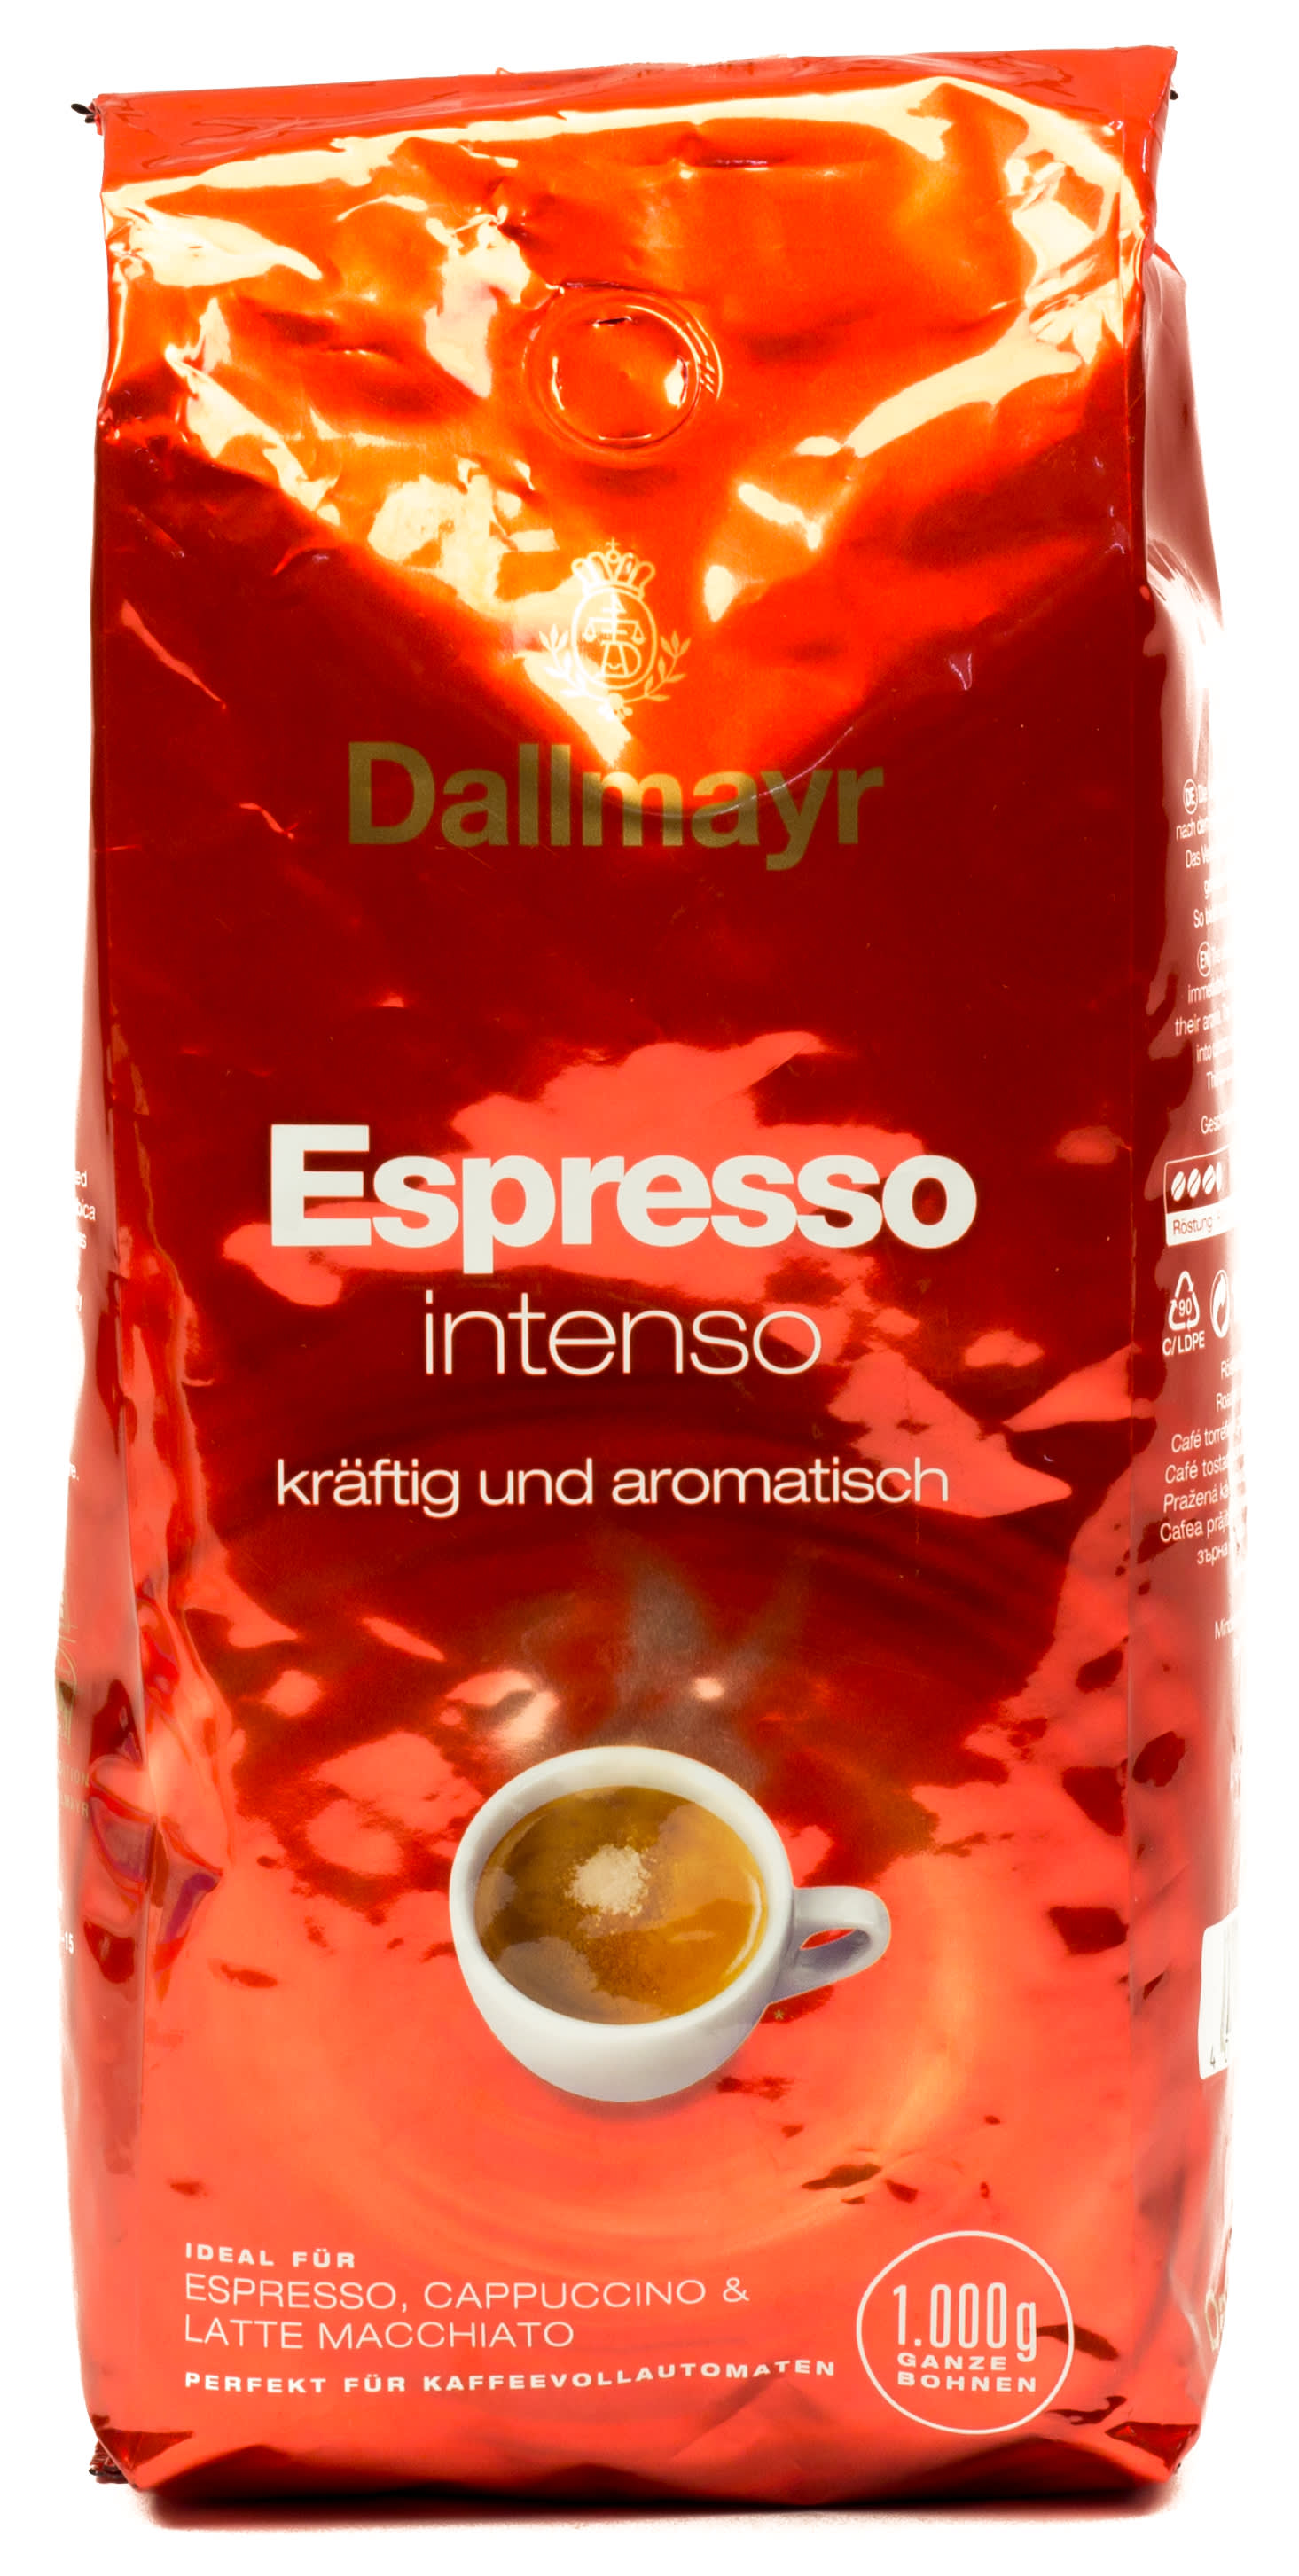 Dallmayr Espresso intenso 1000 g